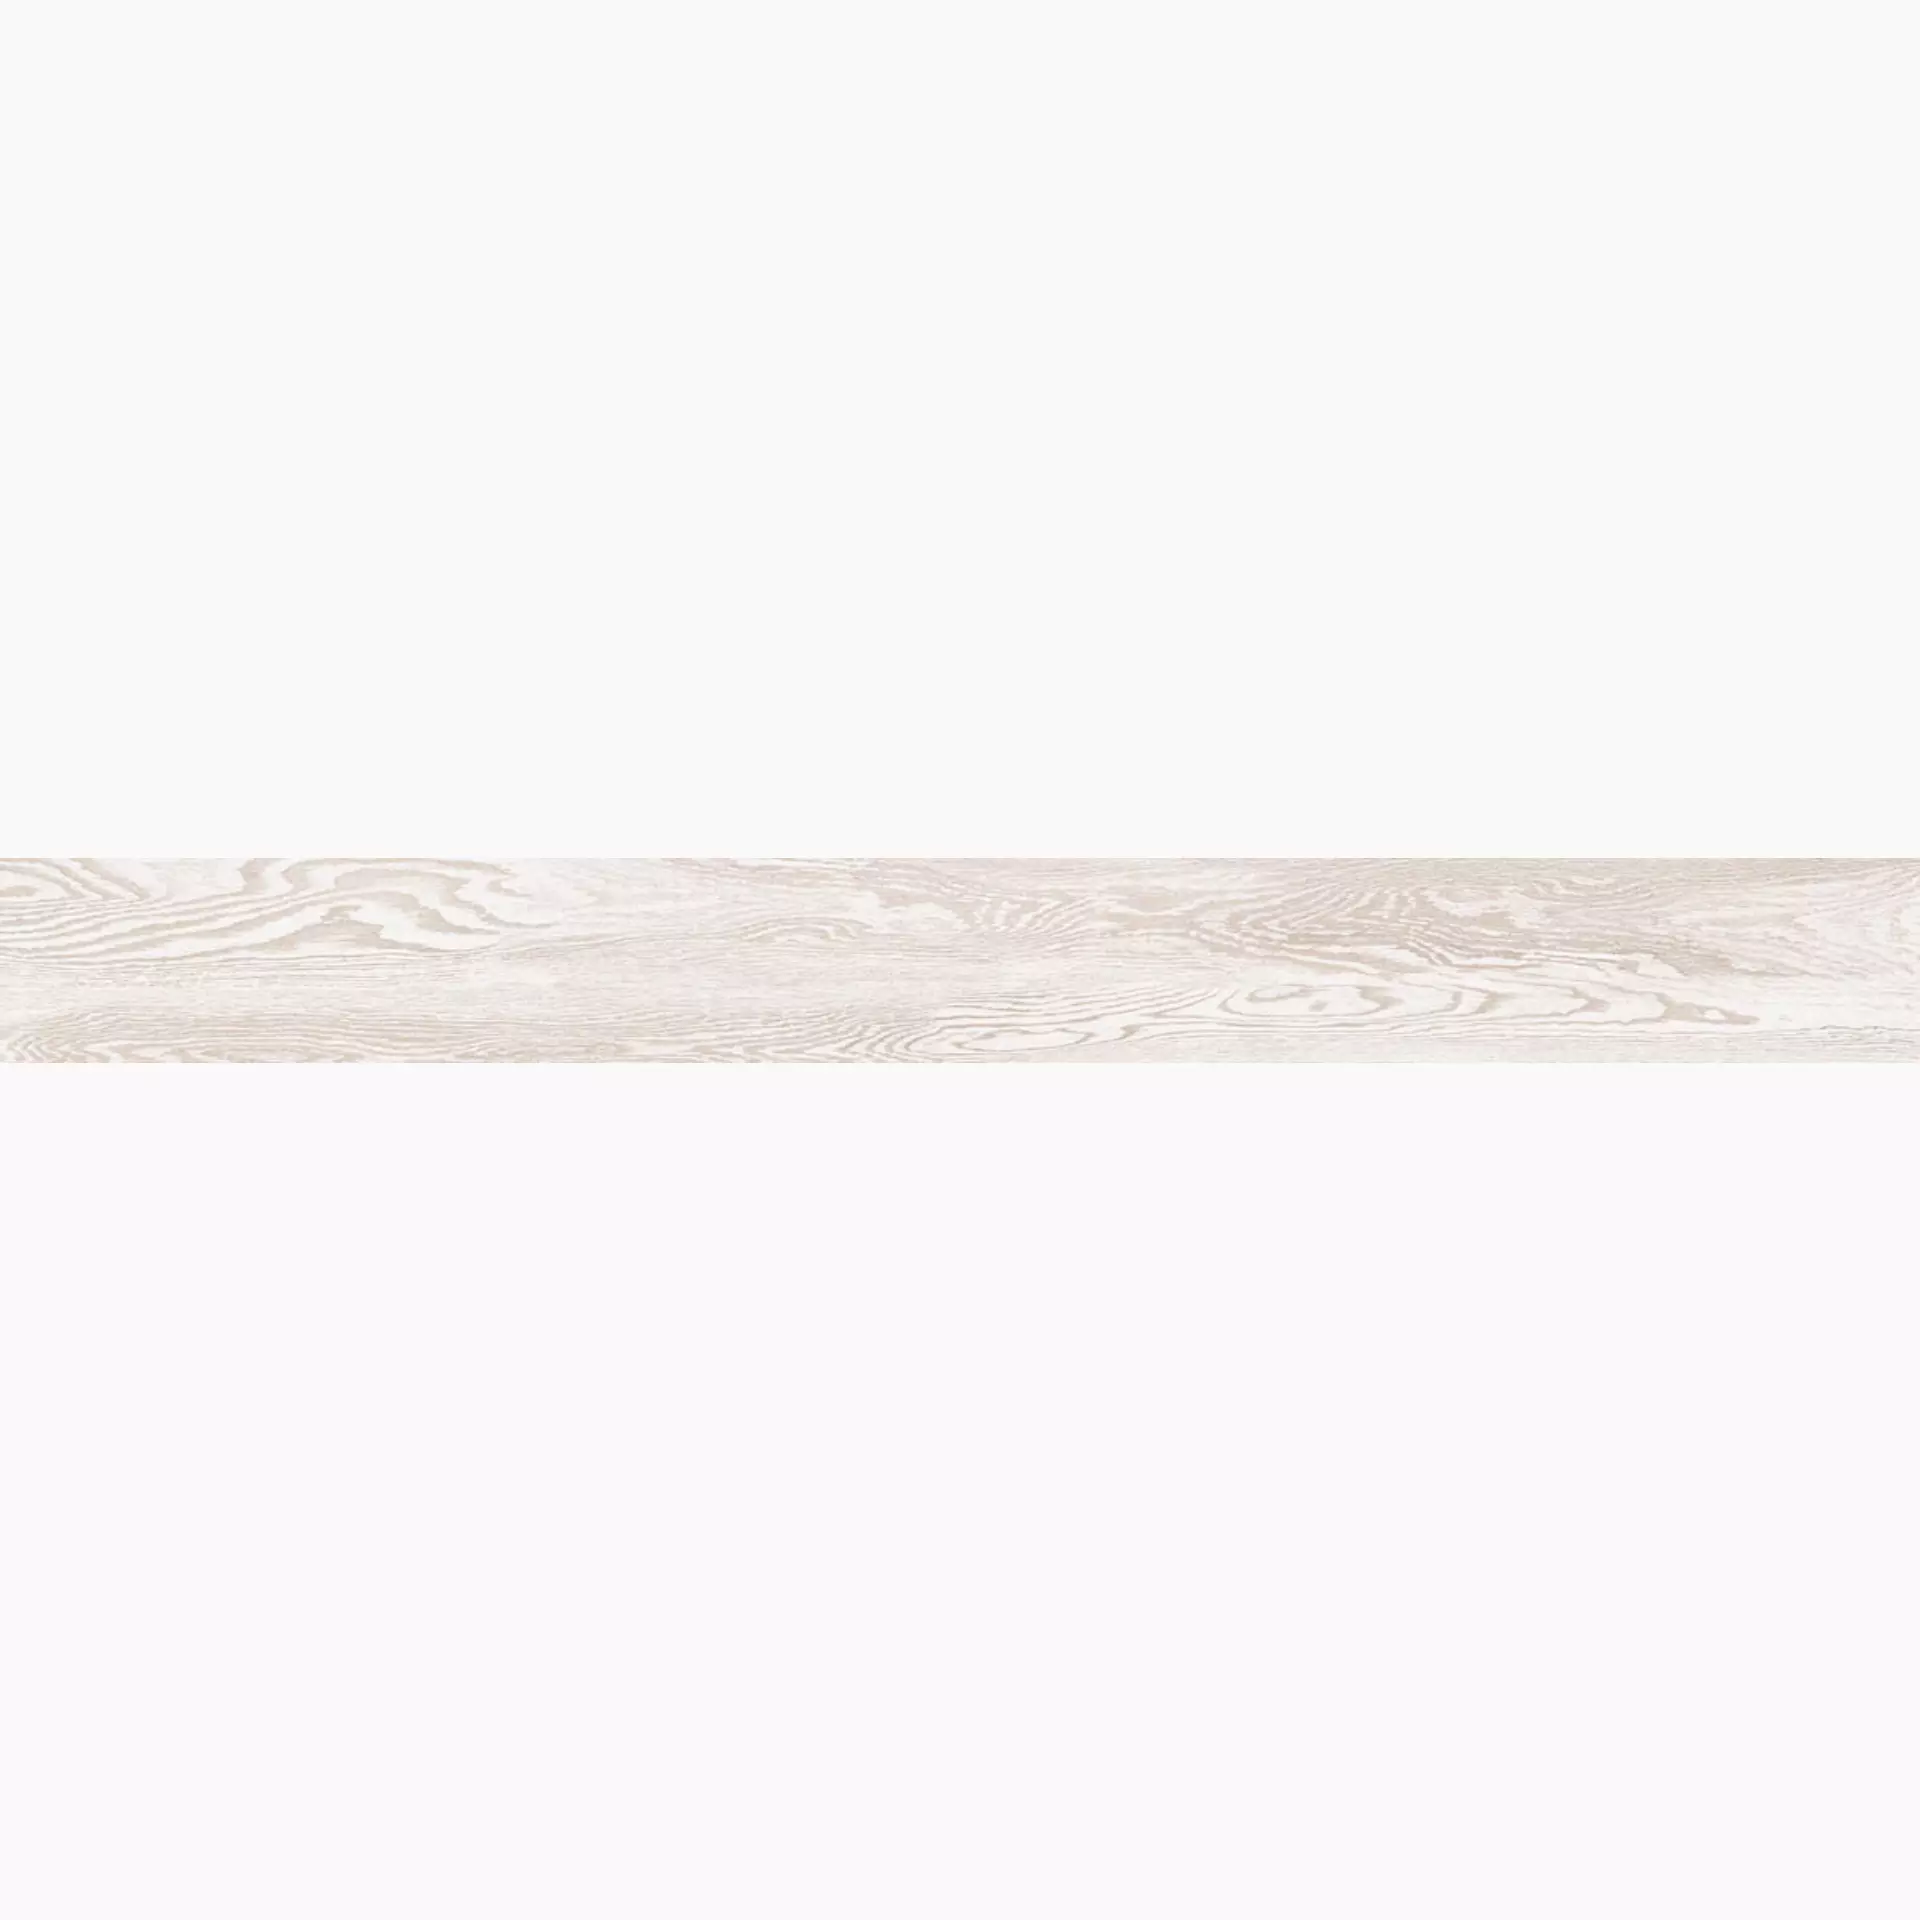 La Faenza Legno White Natural Slate Cut Matt 170465 20x180cm rectified 10mm - LEGNO 2018W RM